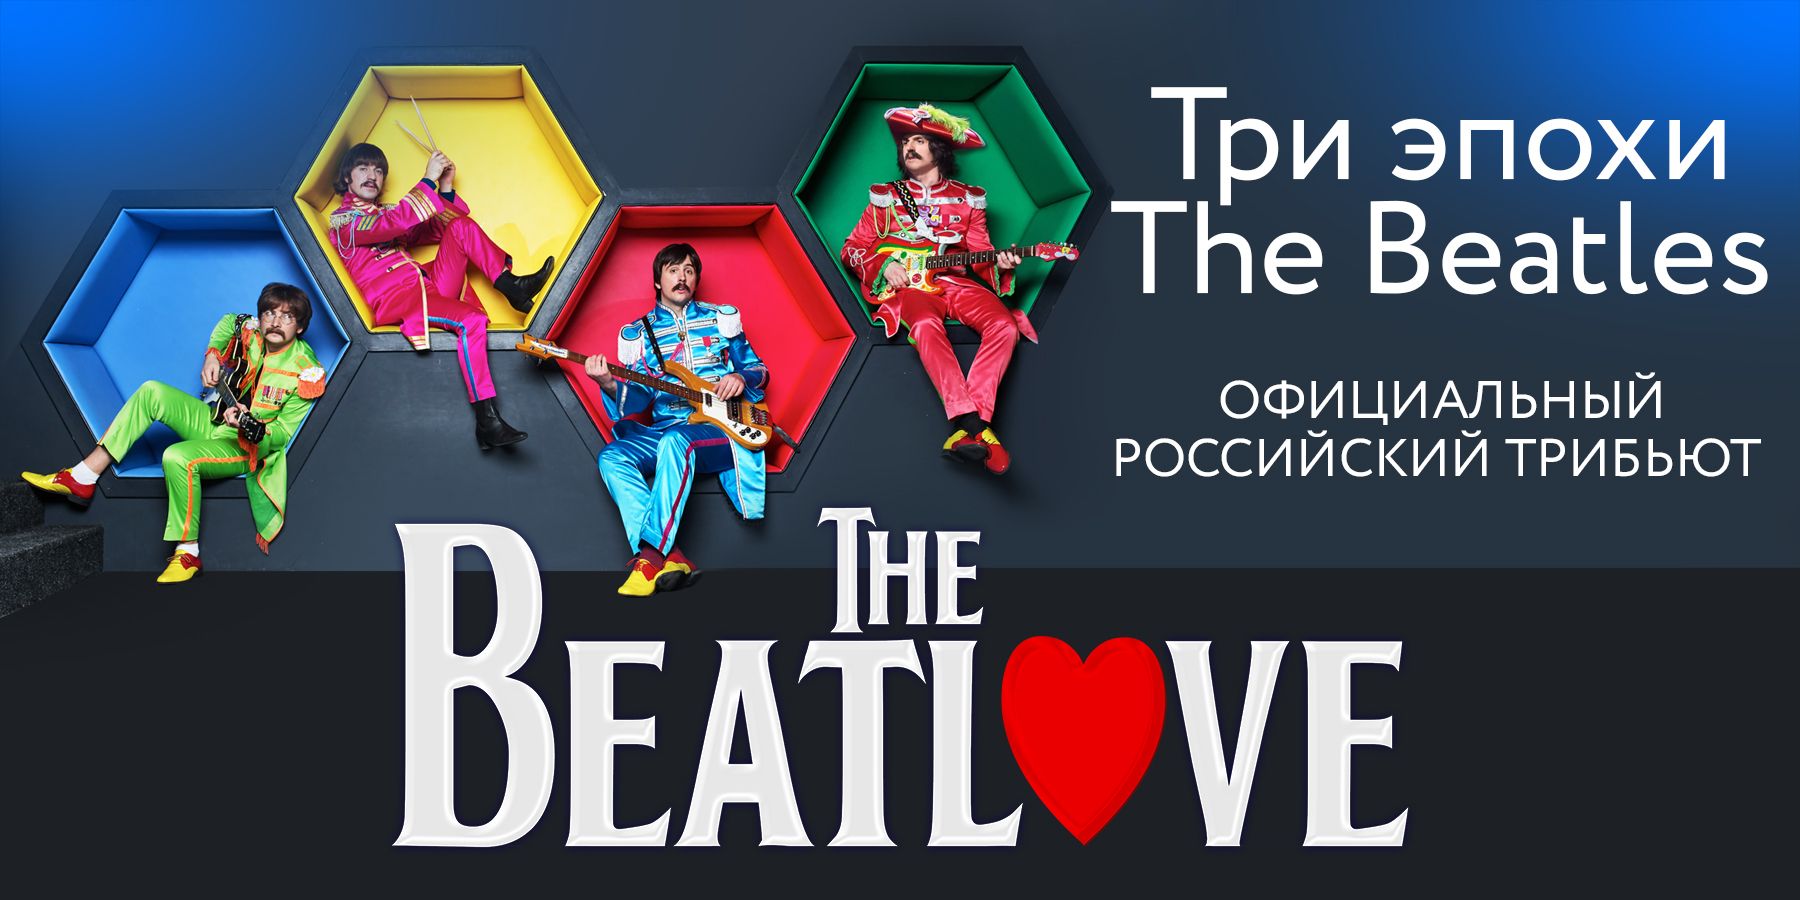 The Beatlove 